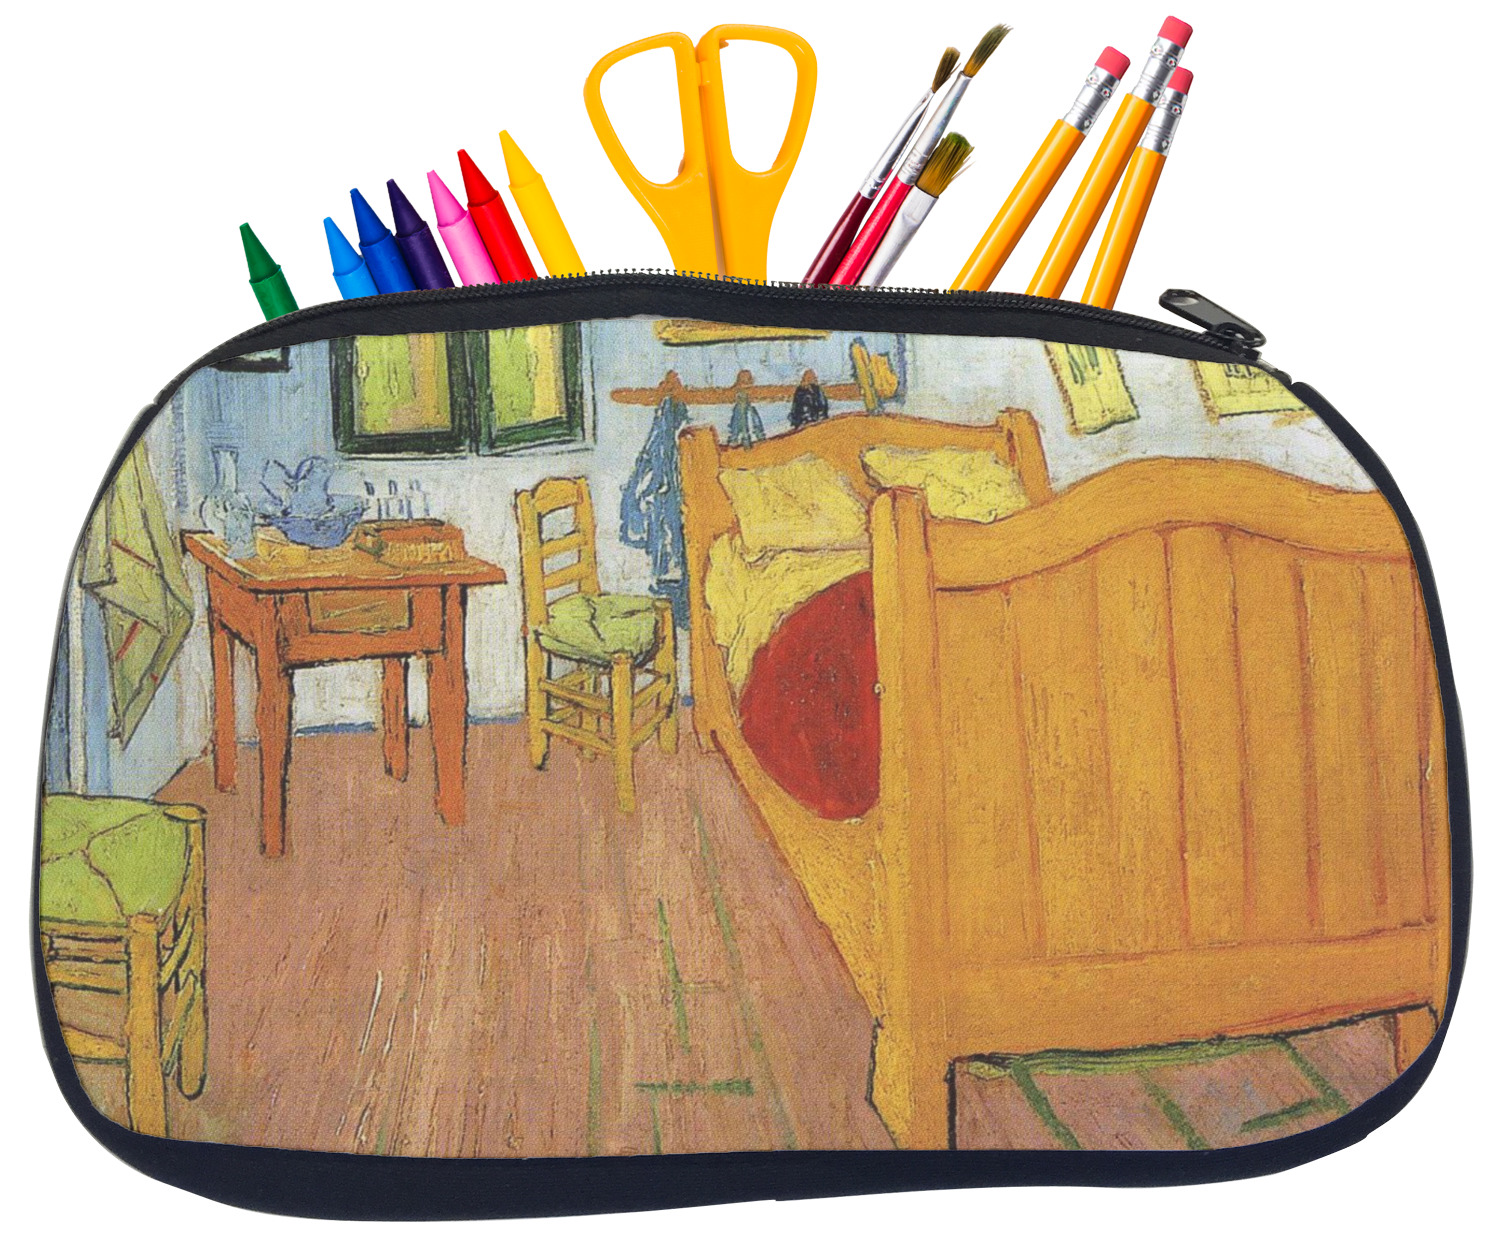 https://www.youcustomizeit.com/common/MAKE/6630401/The-Bedroom-in-Arles-Van-Gogh-1888-Pencil-School-Supplies-Bags-Medium.jpg?lm=1685638349